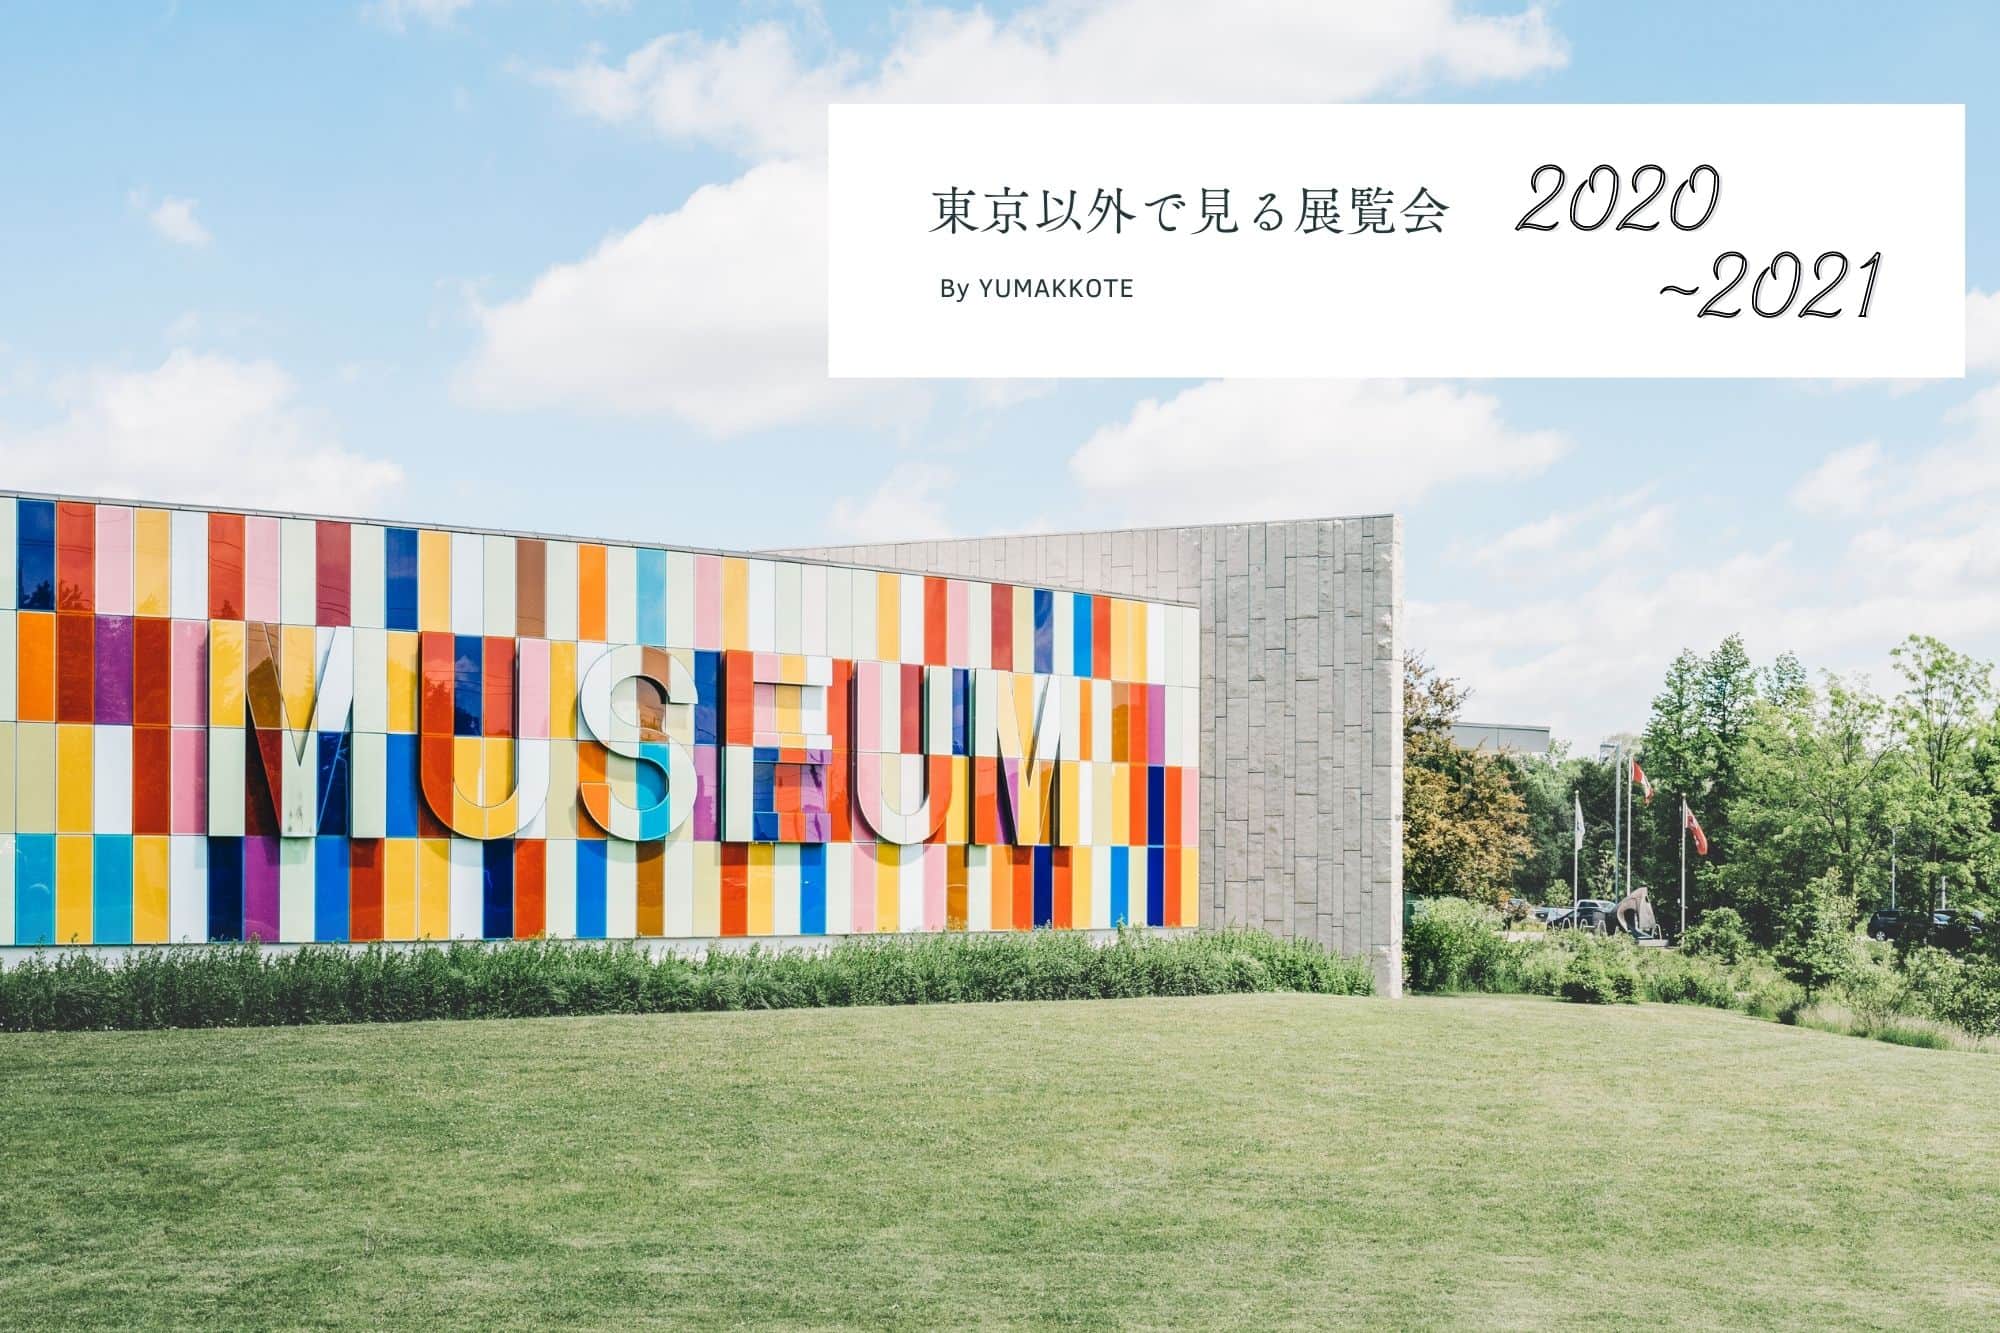 【巡回】東京に行かずに見られる話題の展覧会 2020-2021